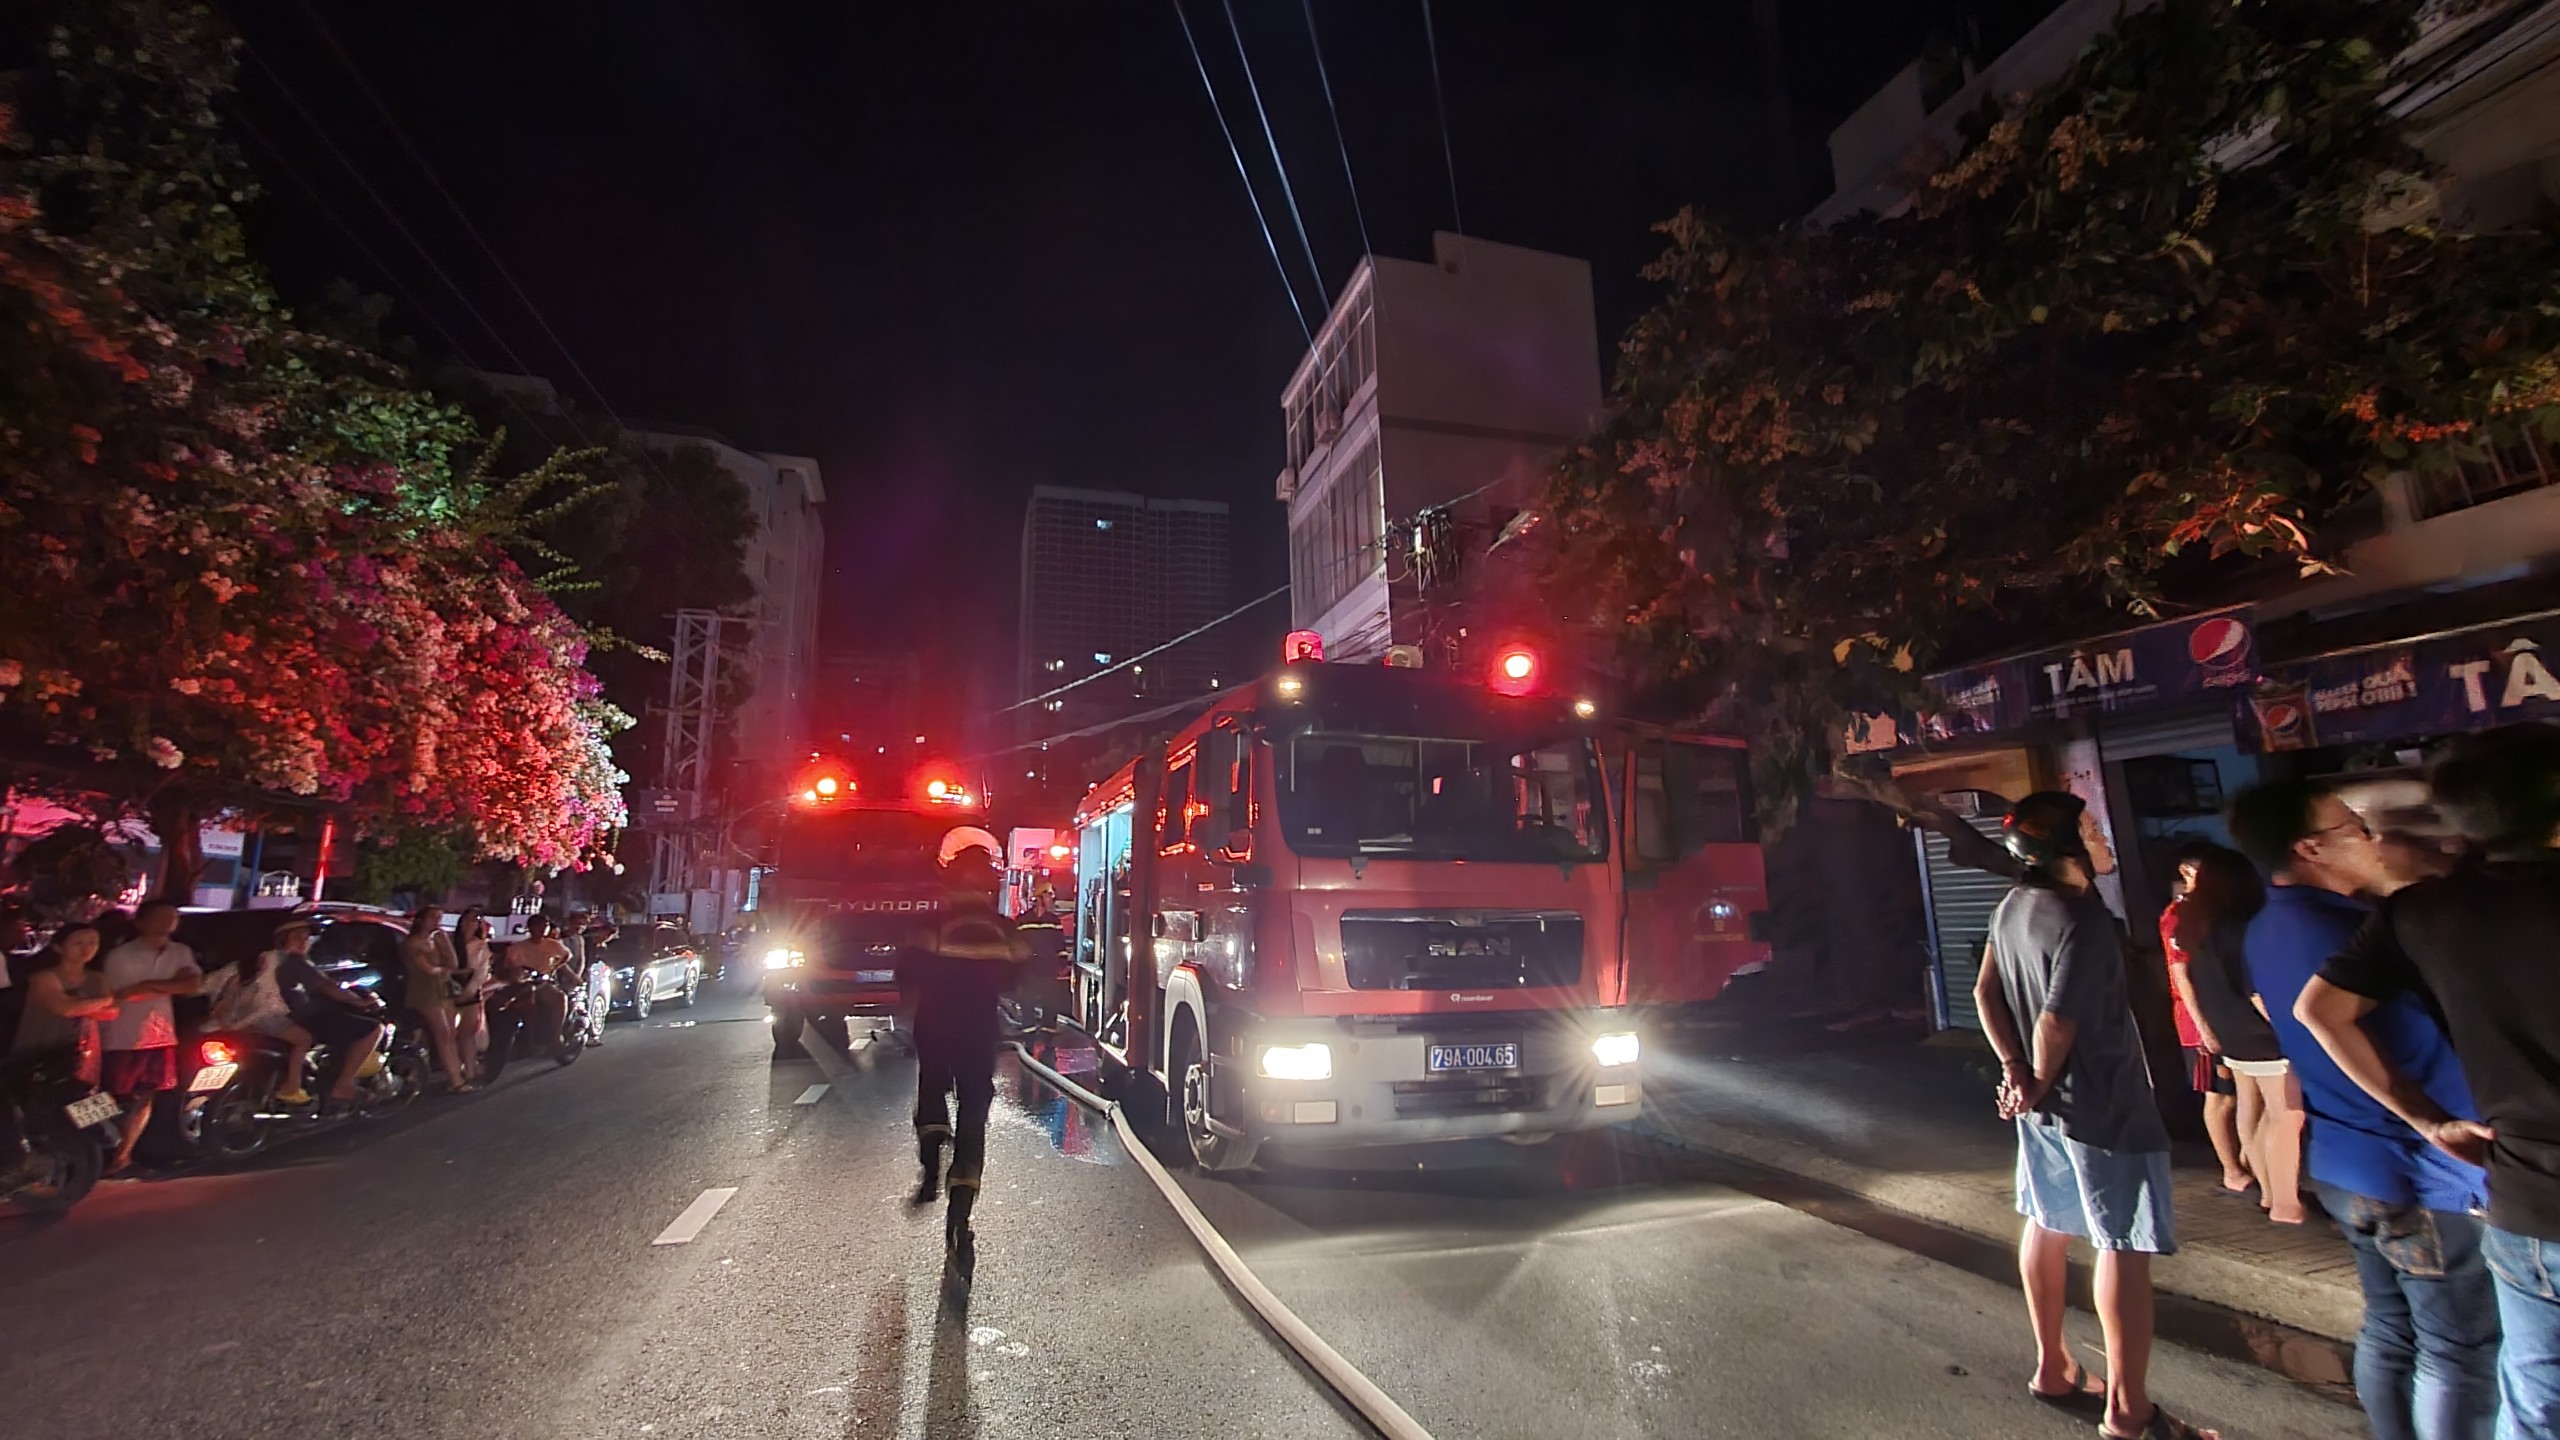 An ninh - Hình sự - Cháy nhà ở Khánh Hòa, giải cứu được 6 người, 3 người tử vong